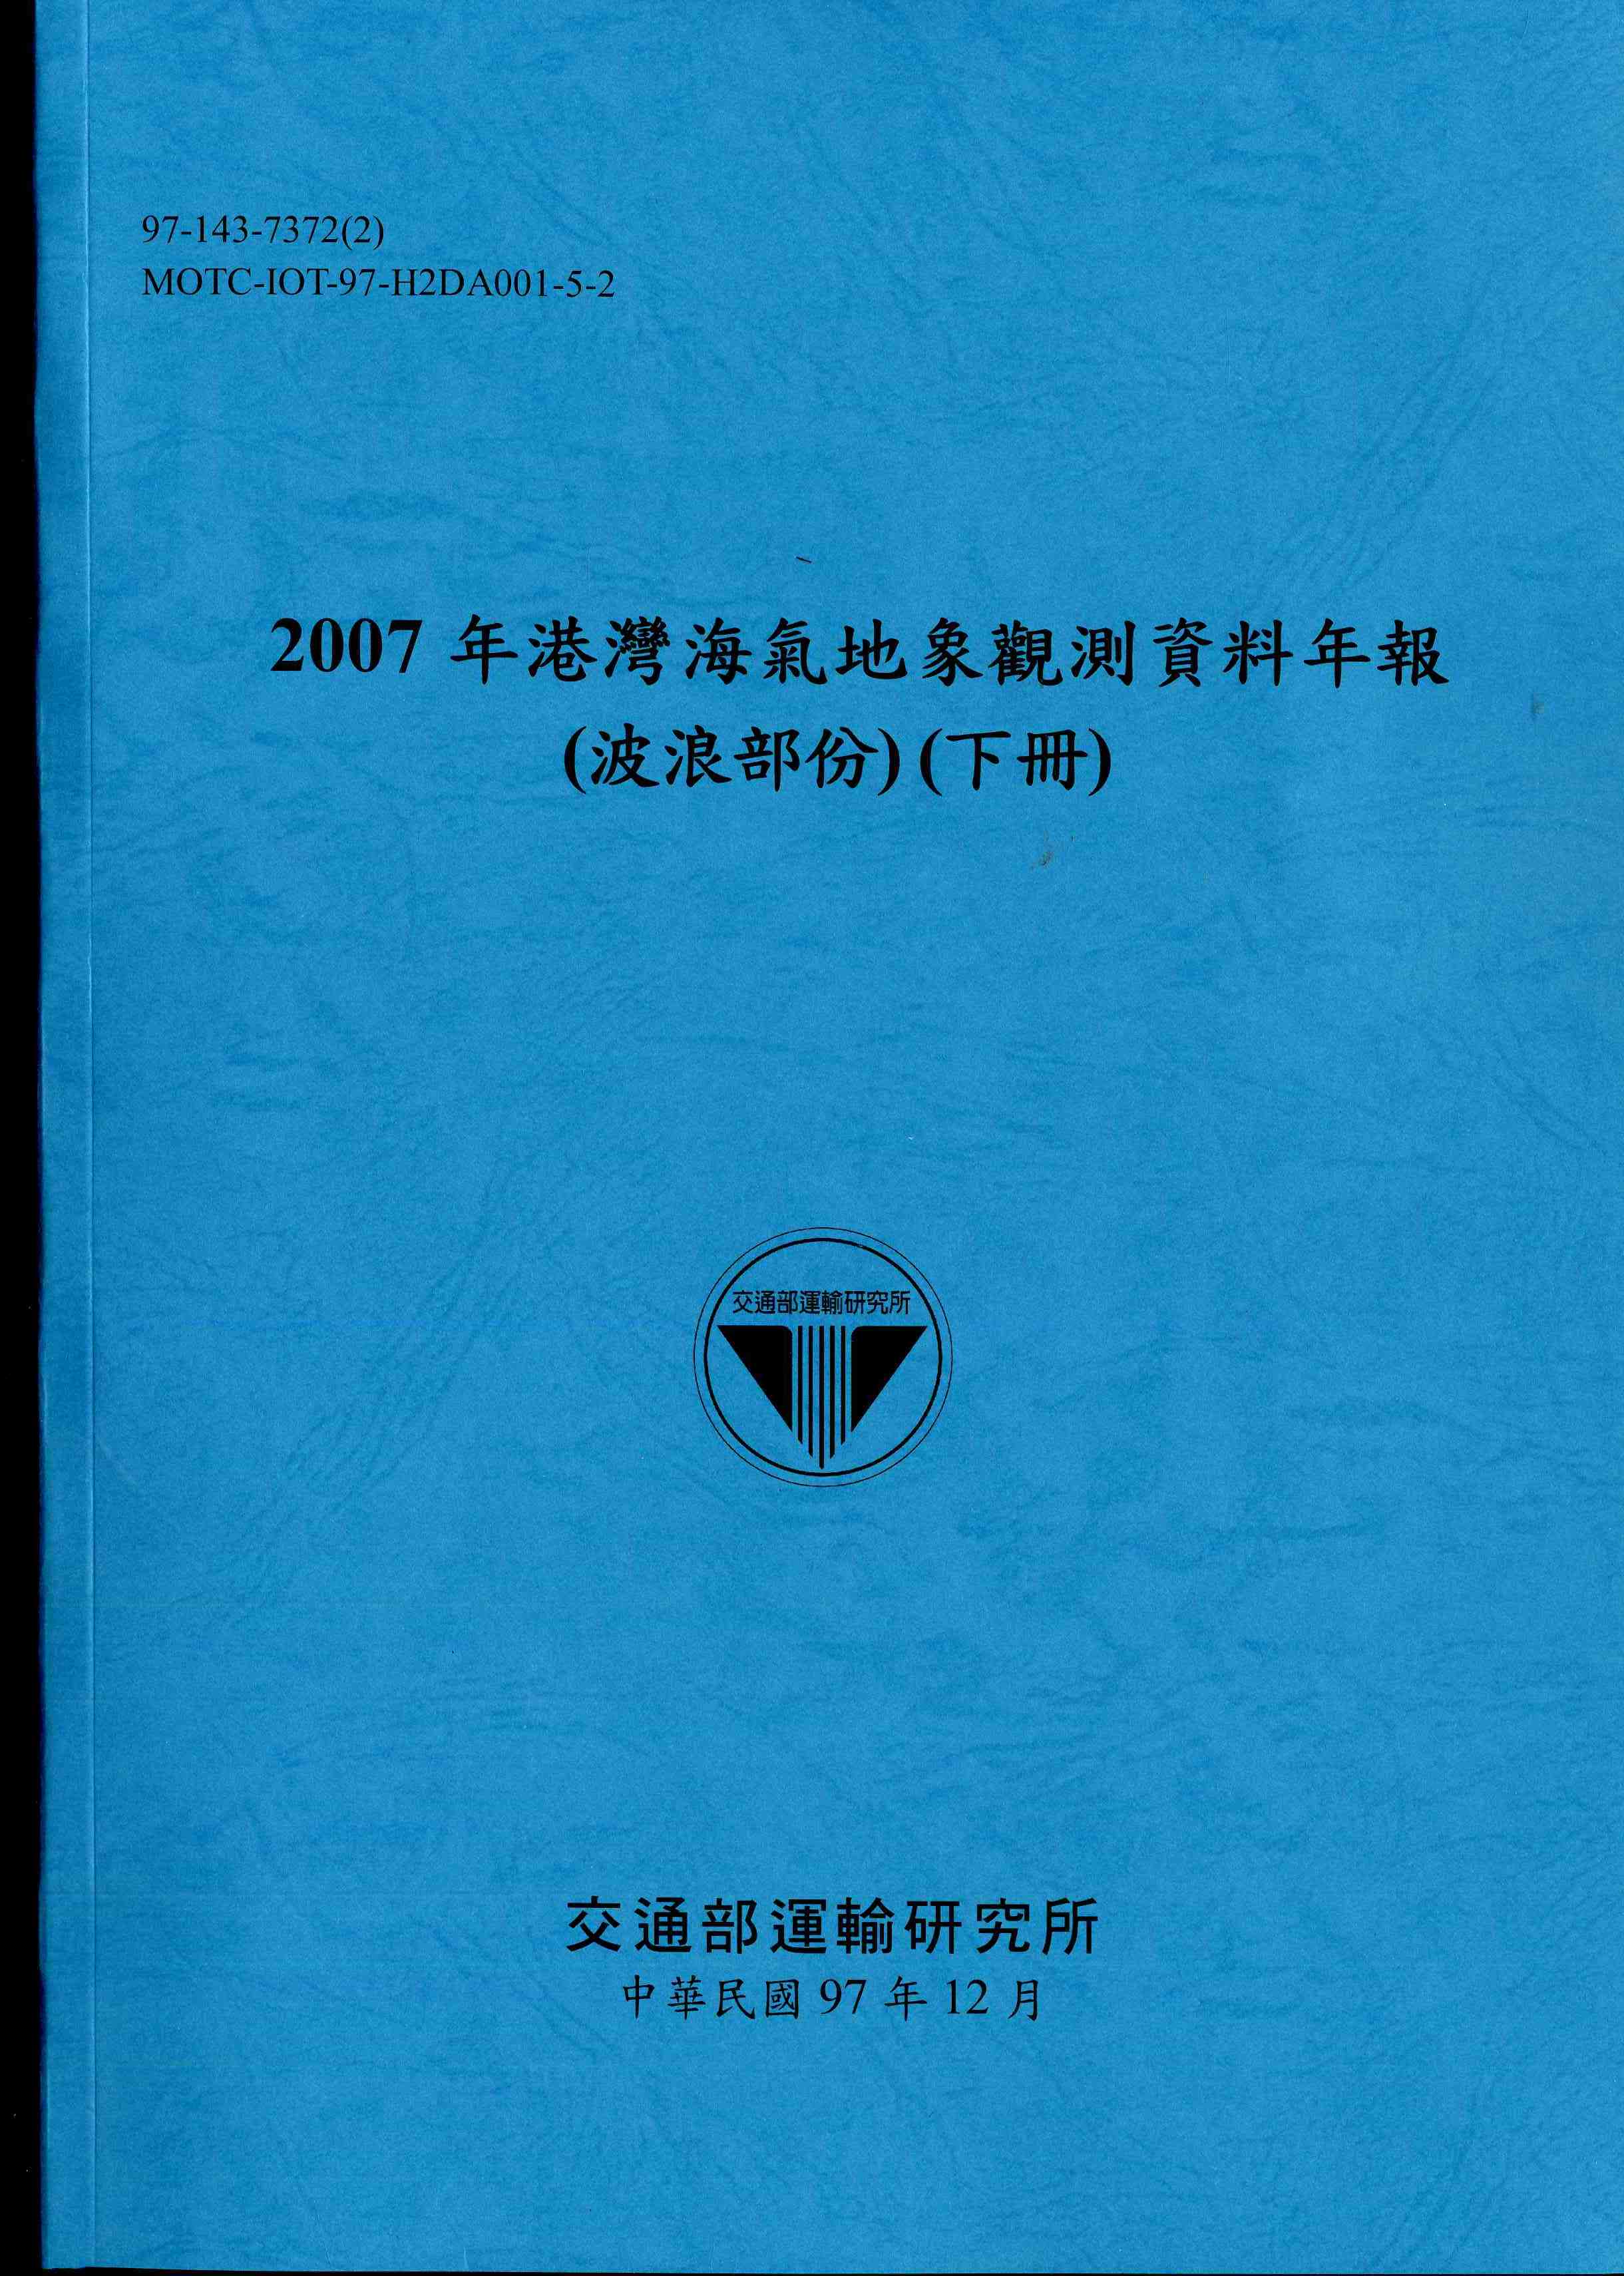 2007年港灣海氣地象觀測資料年報(波浪部份)(下冊)